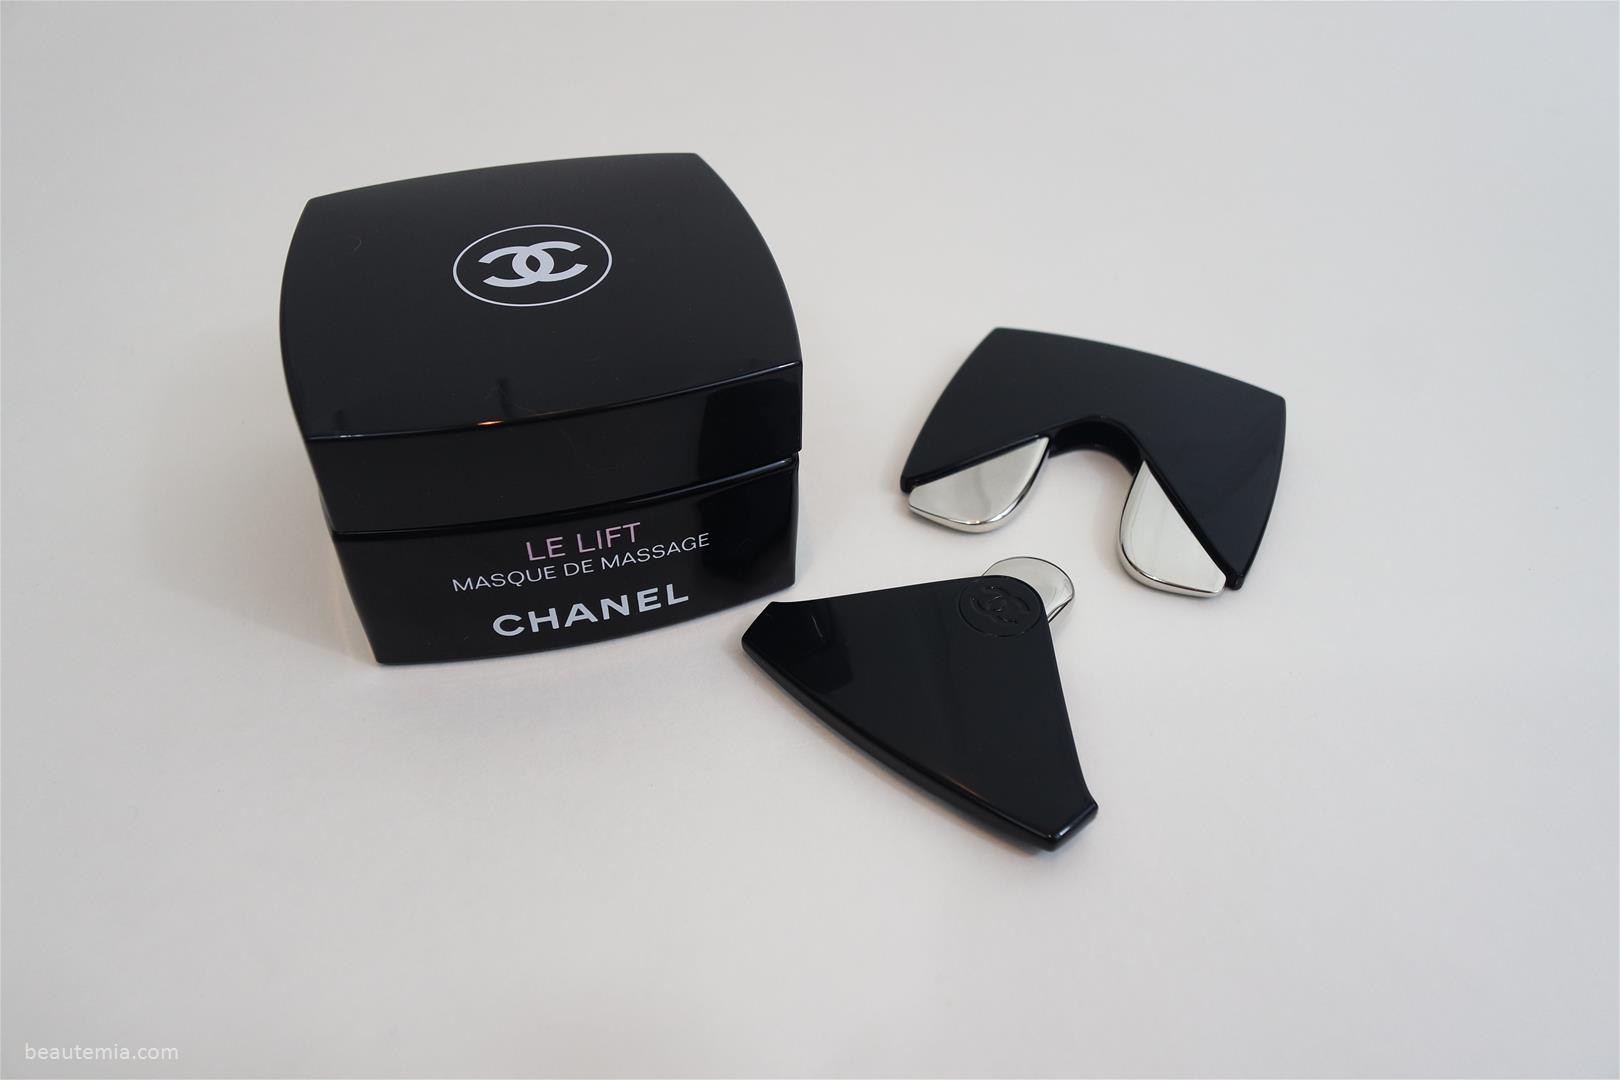 Chanel Review > Le Lift Masque de Massage (Recontouring Massage Mask) & Le  Lift Massage Tool